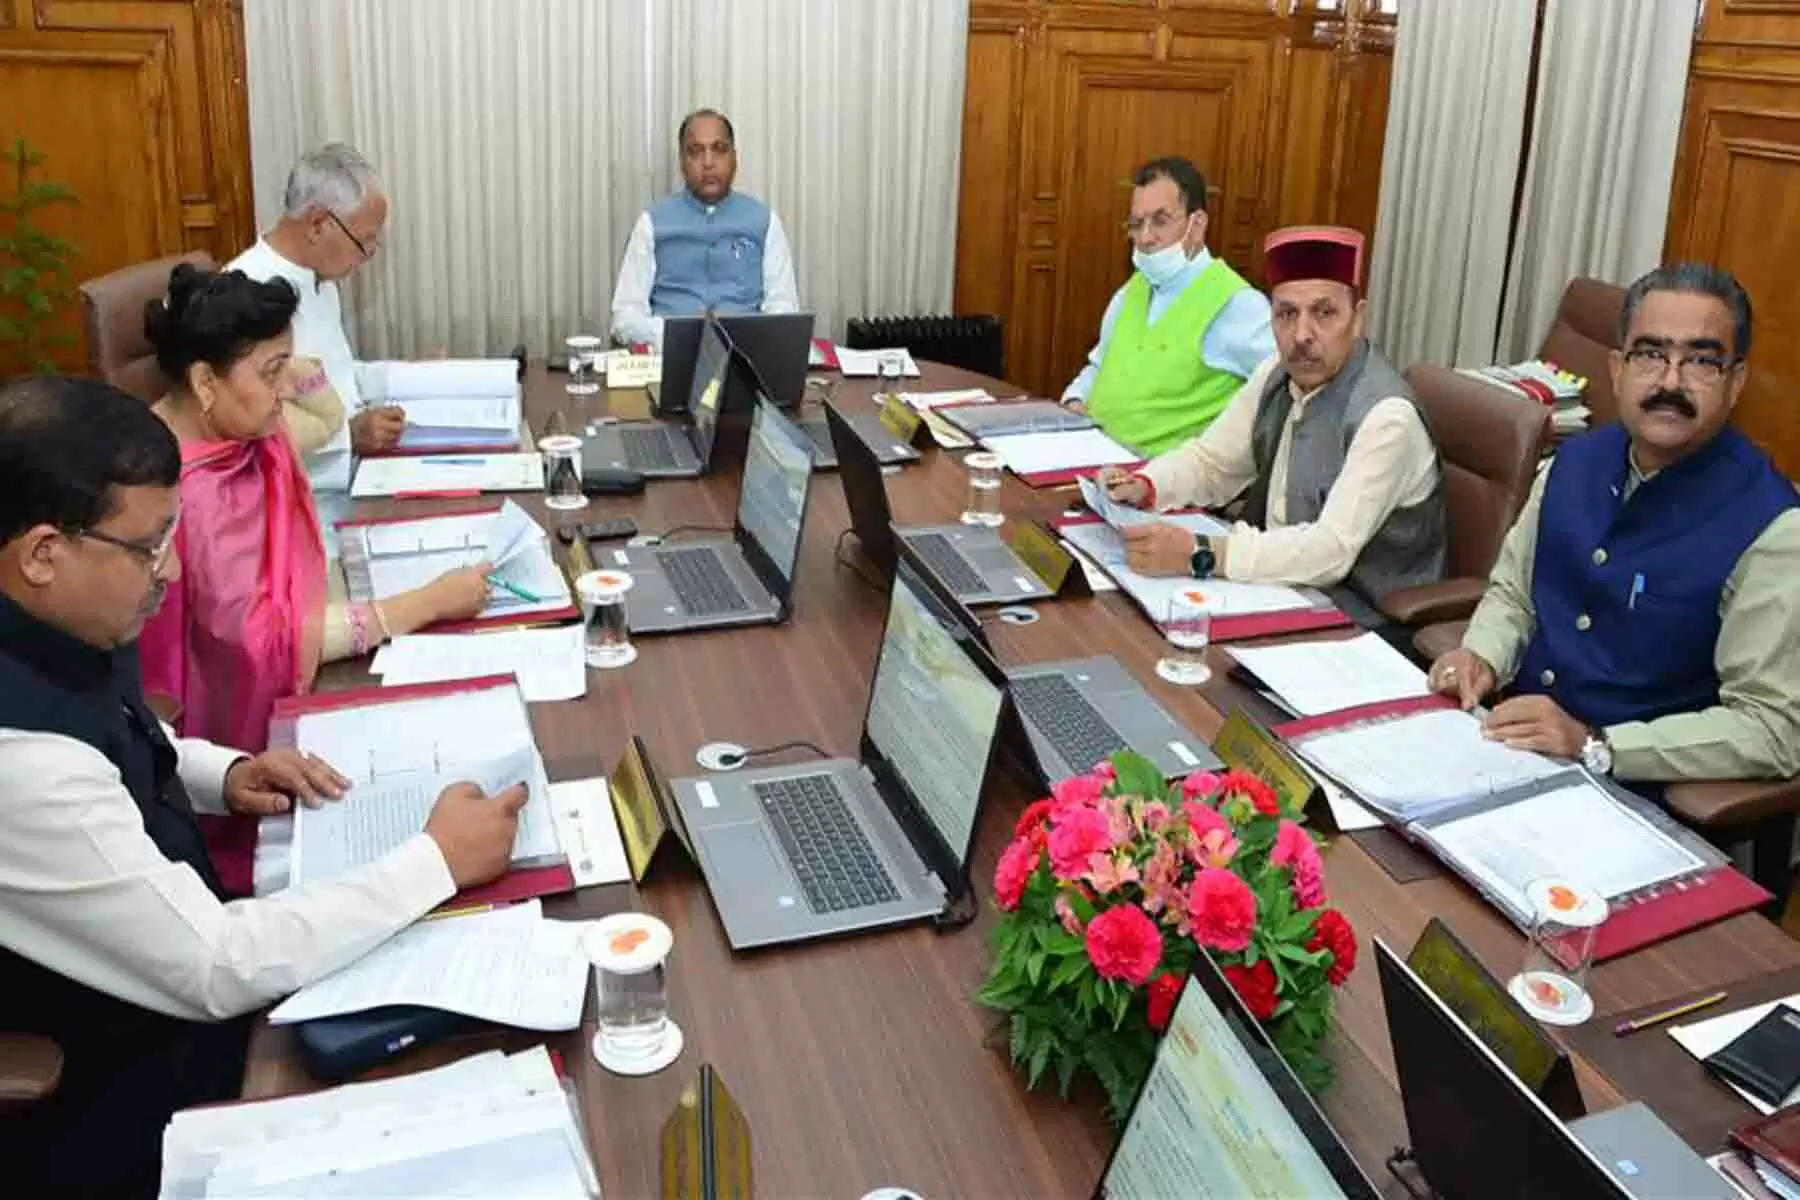 हिमाचल प्रदेश मंत्रिमंडल (Himachal Cabinet Meeting) की बैठक बुधवार को सीएम जयराम ठाकुर (Cm Jairam Thakur) की अध्यक्षता में सचिवालय में हुई। इस कैबिनेट बैठक में कई महत्वपूर्ण निर्णय लिए गए। कैबिनेट ने शिमला डेवेलपमेन्ट प्लान (Shimla Development Plan) को मंजूरी देने के साथ ही पंचायती राज संस्थाओं के प्रतिनिधियों के मानदेय में बढ़ोतरी करने को भी स्वीकृति दी गई है। हिमाचल प्रदेश में अब पंचायती राज संस्थाओं के प्रतिनिधियों को बढ़ा हुआ मानदेय मिलेगा।